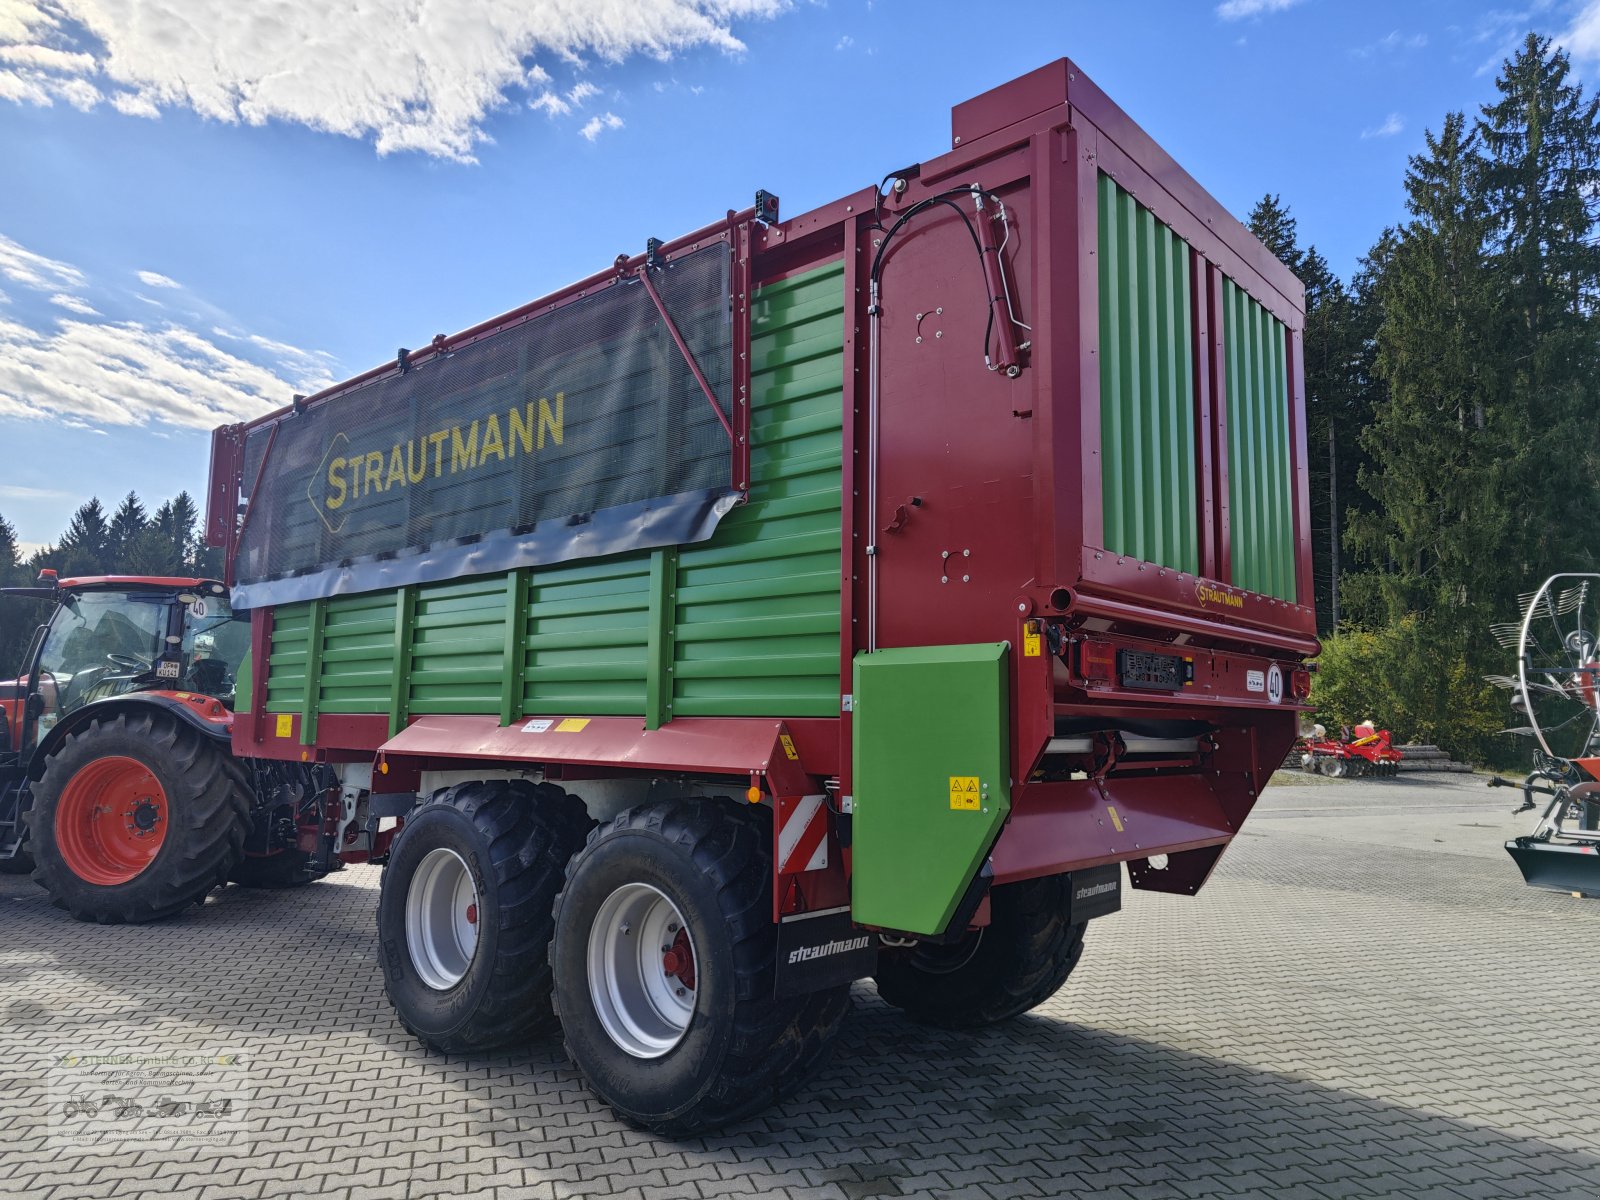 Häcksel Transportwagen des Typs Strautmann Giga Trailer 400, Gebrauchtmaschine in Eging am See (Bild 3)